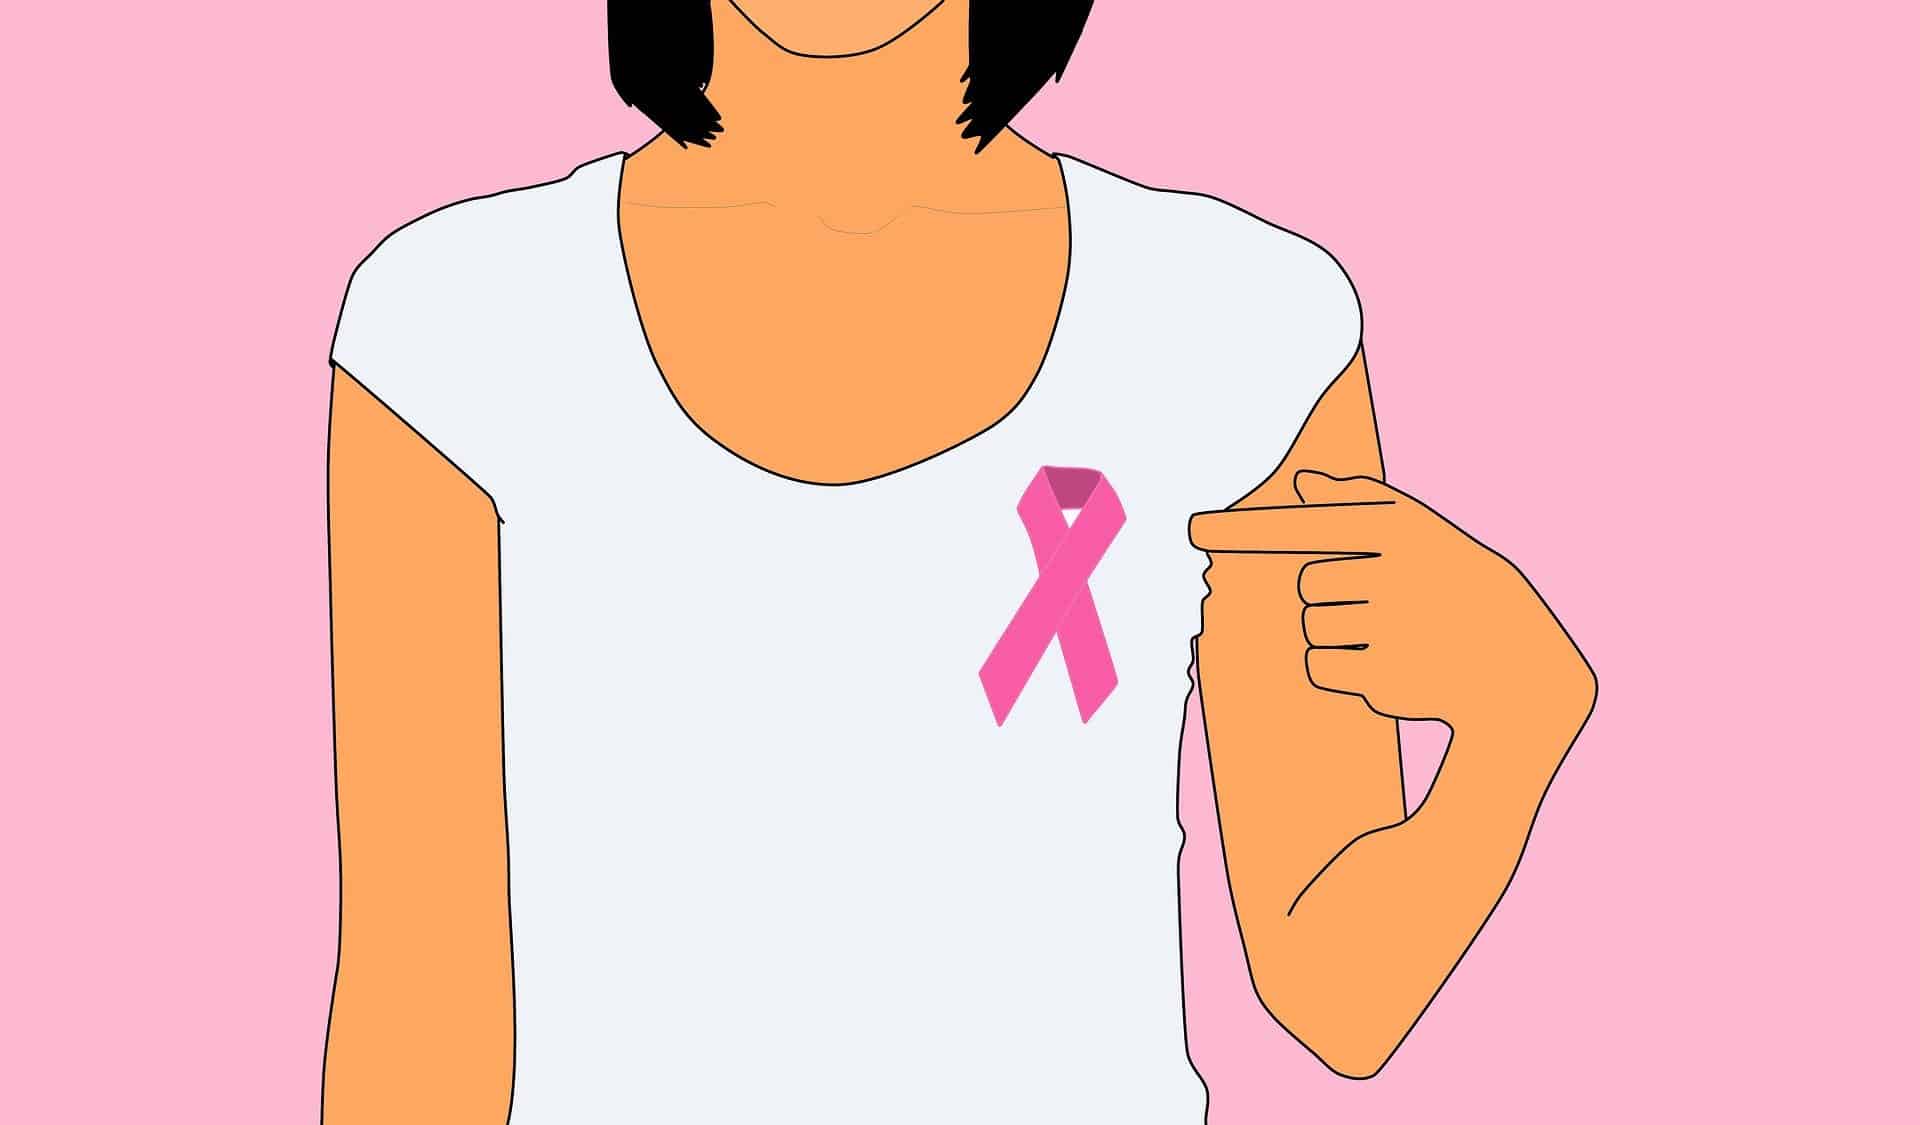 rakovina prsníka - october pink 1714664 1920 - Podporte ženy s rakovinou prsníka ružovou farbou